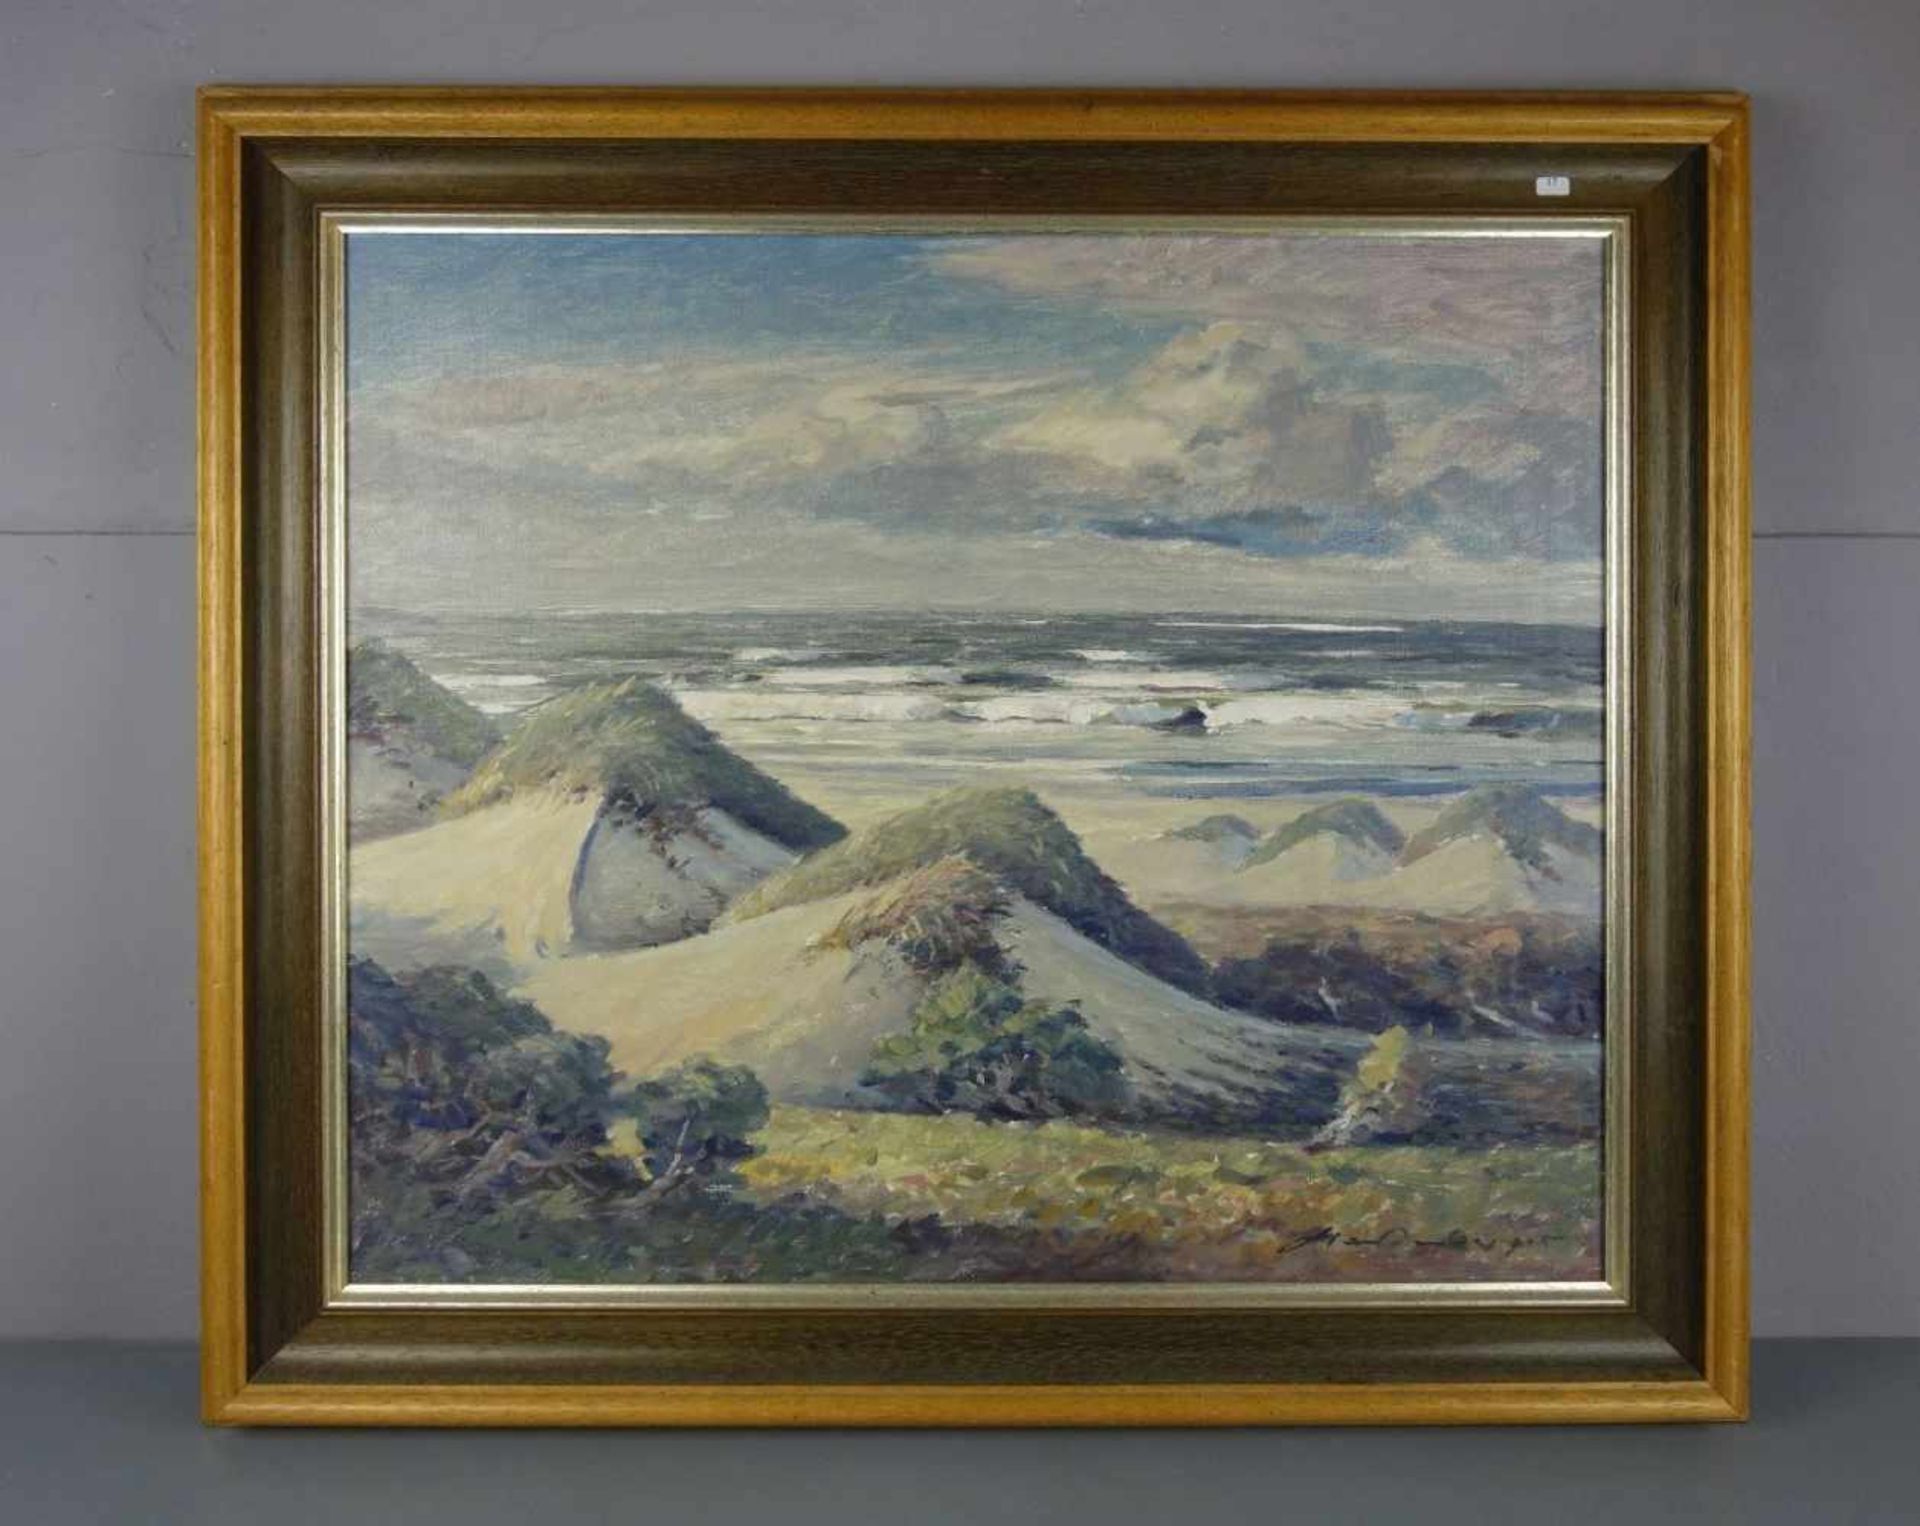 HARTENBERGER, ERWIN (Posen 1919- 2007 Norderney), Gemälde / painting: "Küstenlandschaft auf